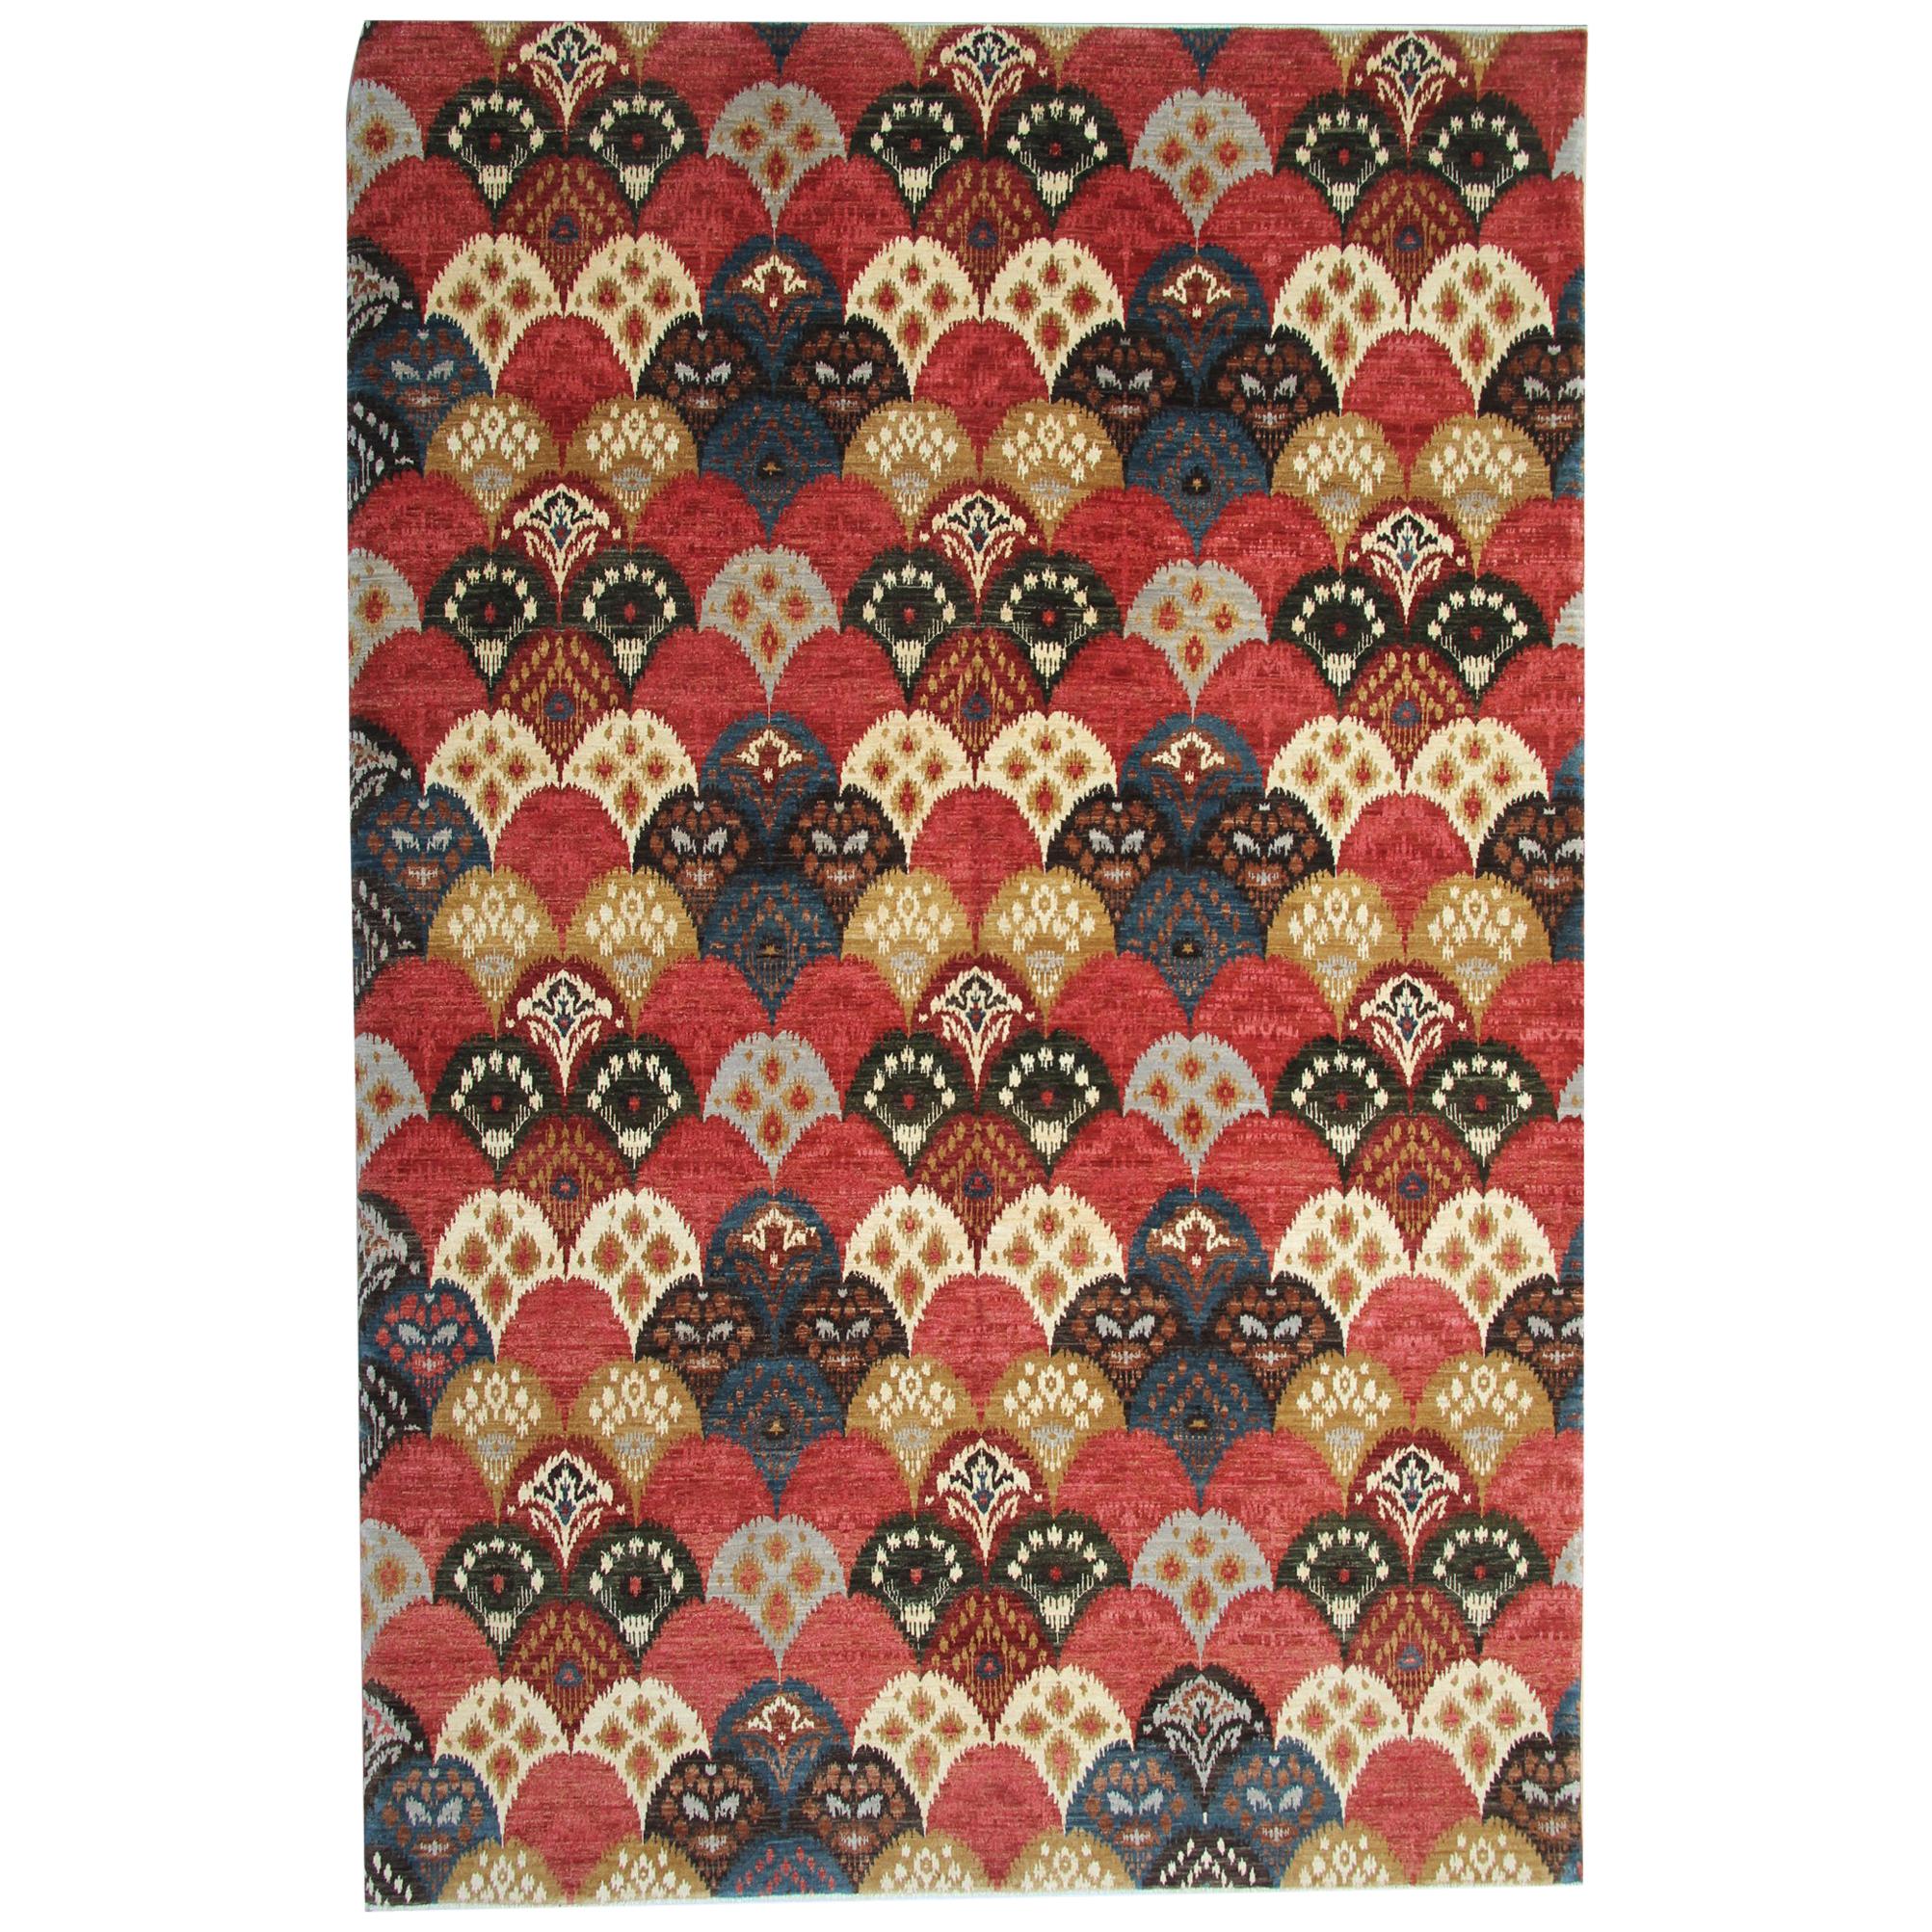 Tapis oriental fait à la main, tapis oriental moderne, design sur toute sa surface